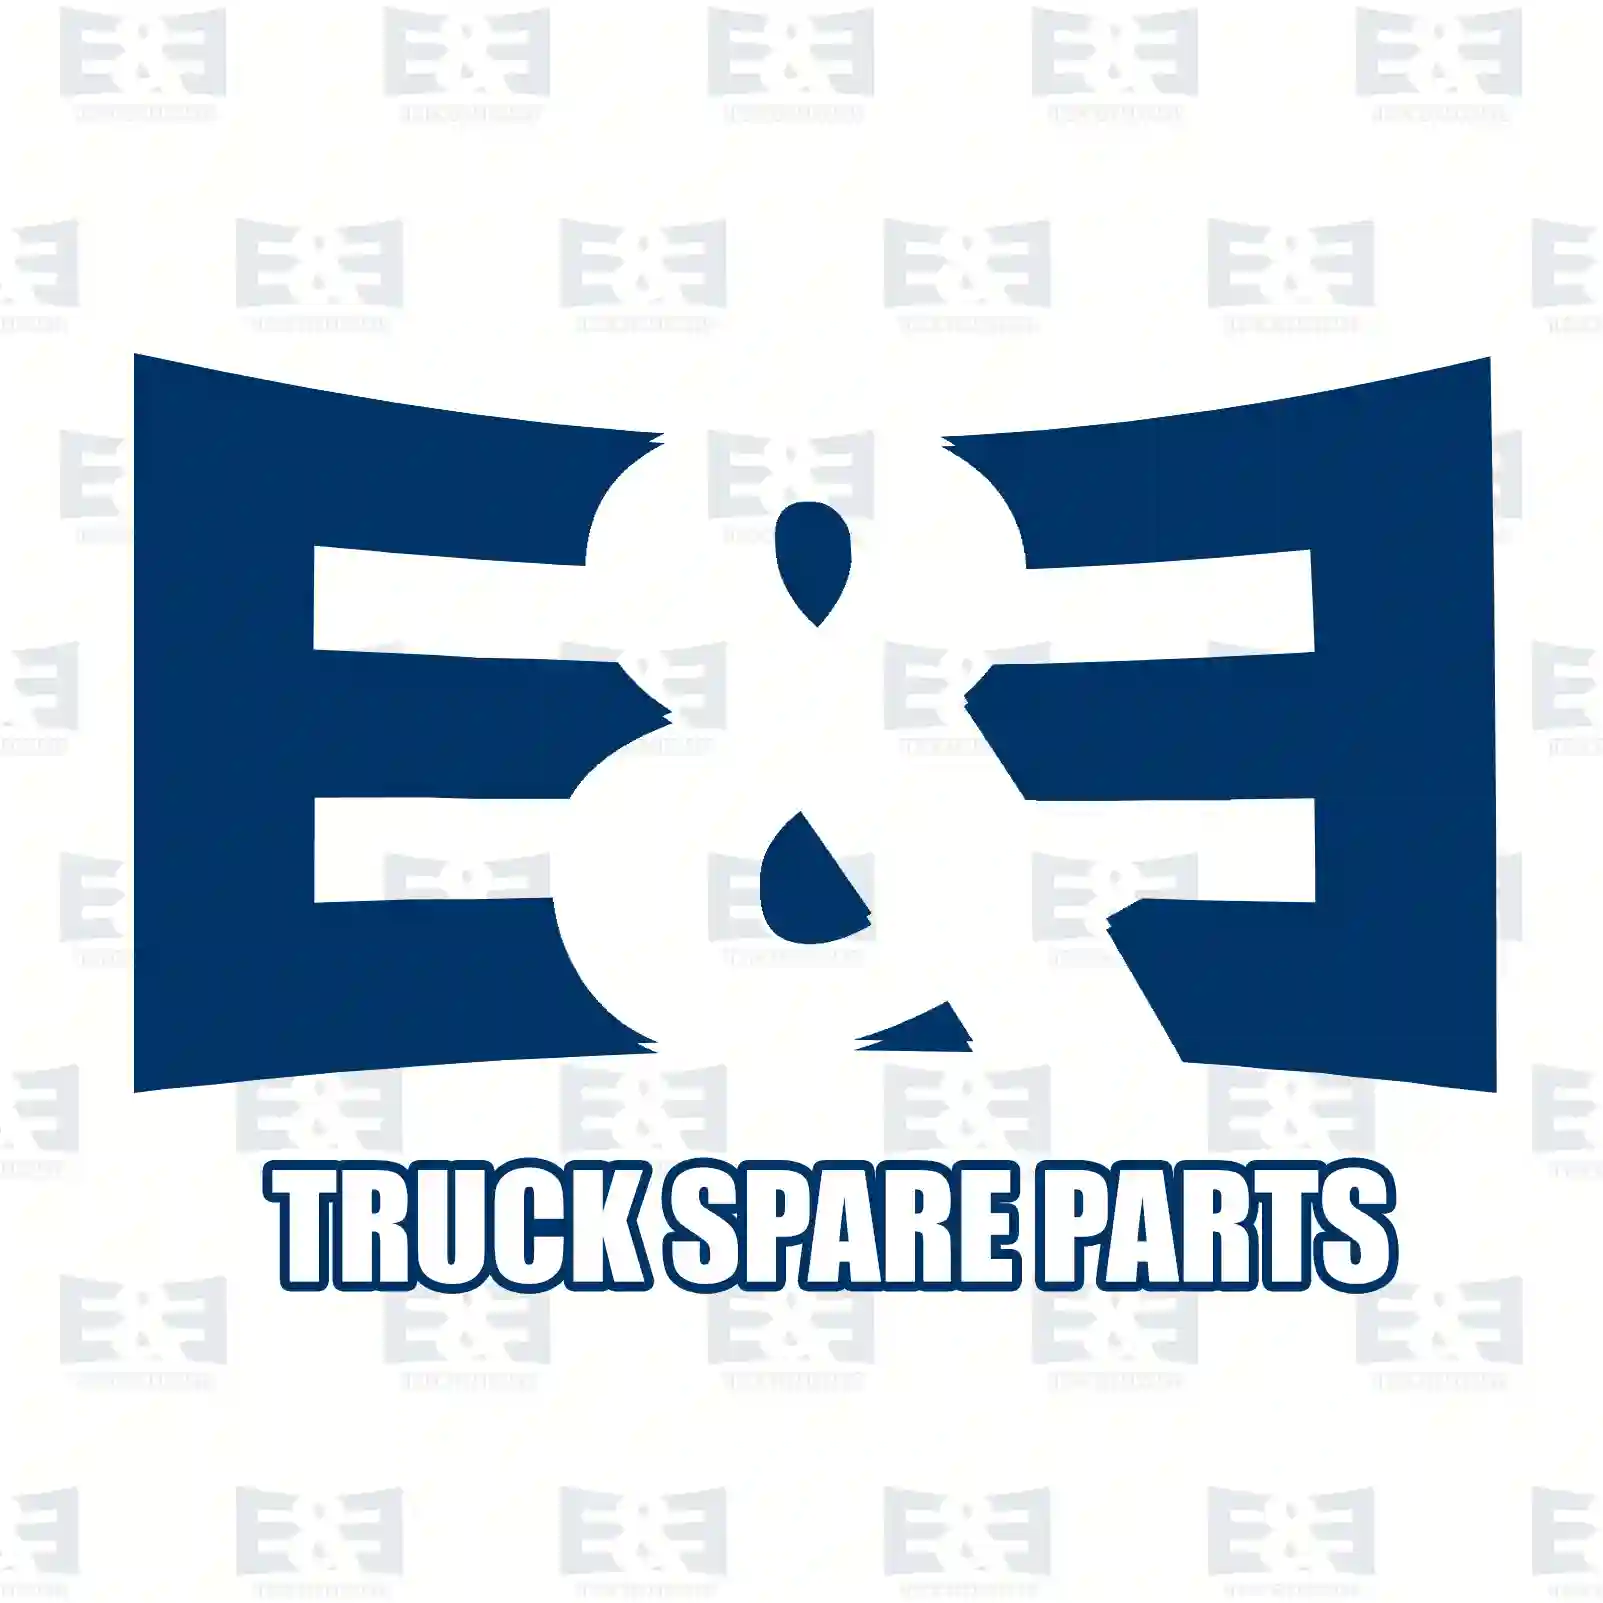 Ball joint, 2E2277868, 1356022, 1384624, 550268, ZG40128-0008 ||  2E2277868 E&E Truck Spare Parts | Truck Spare Parts, Auotomotive Spare Parts Ball joint, 2E2277868, 1356022, 1384624, 550268, ZG40128-0008 ||  2E2277868 E&E Truck Spare Parts | Truck Spare Parts, Auotomotive Spare Parts